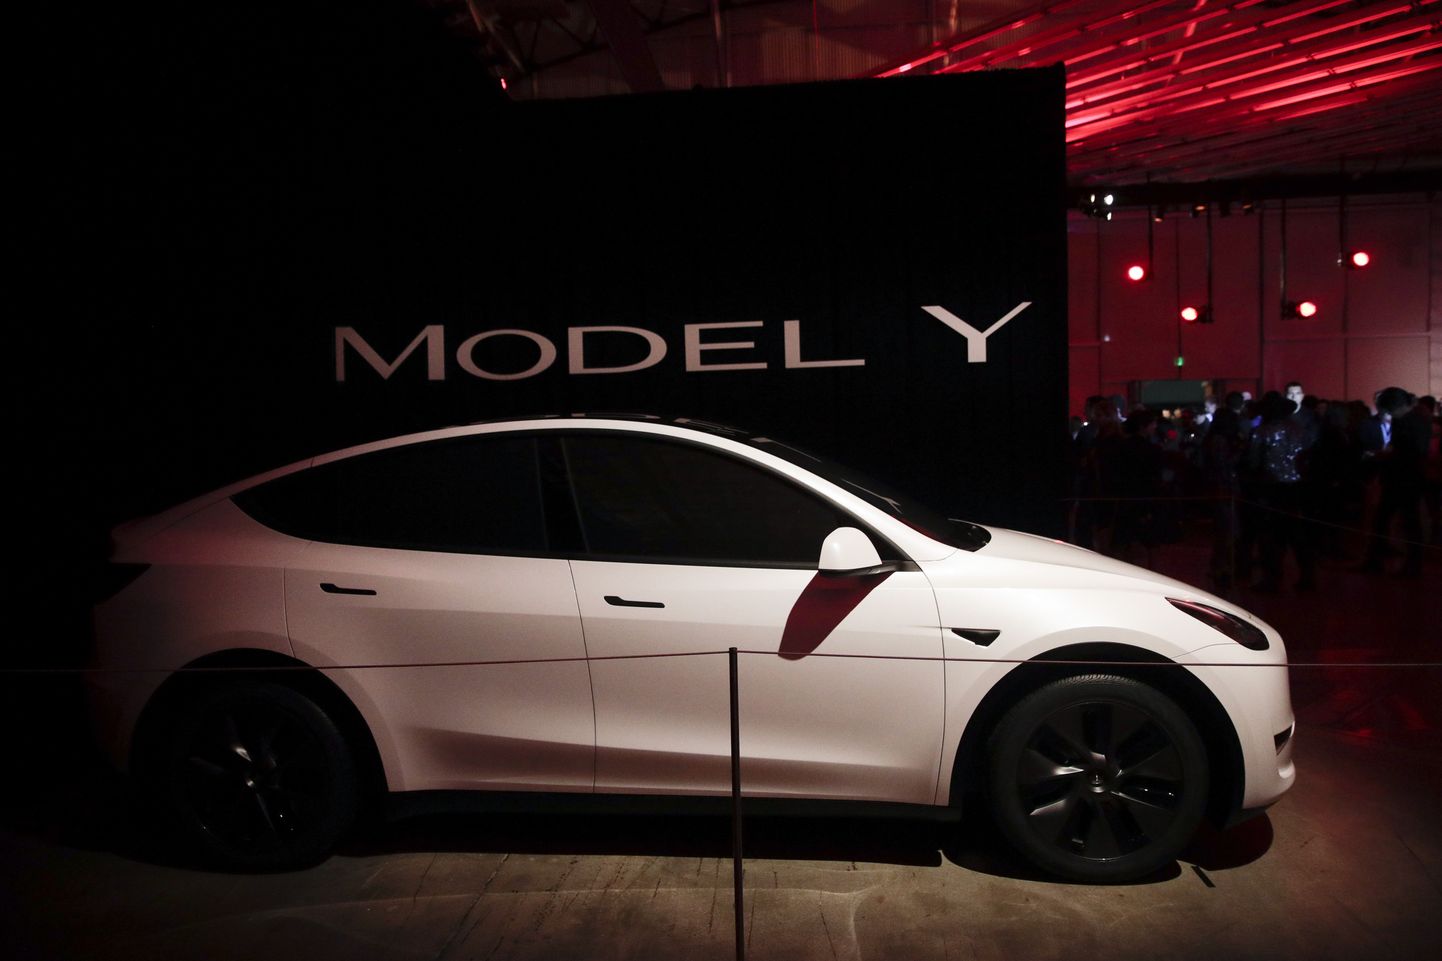 Eelmise aasta populaarseim täiselektriauto Euroopas oli Tesla Model Y.